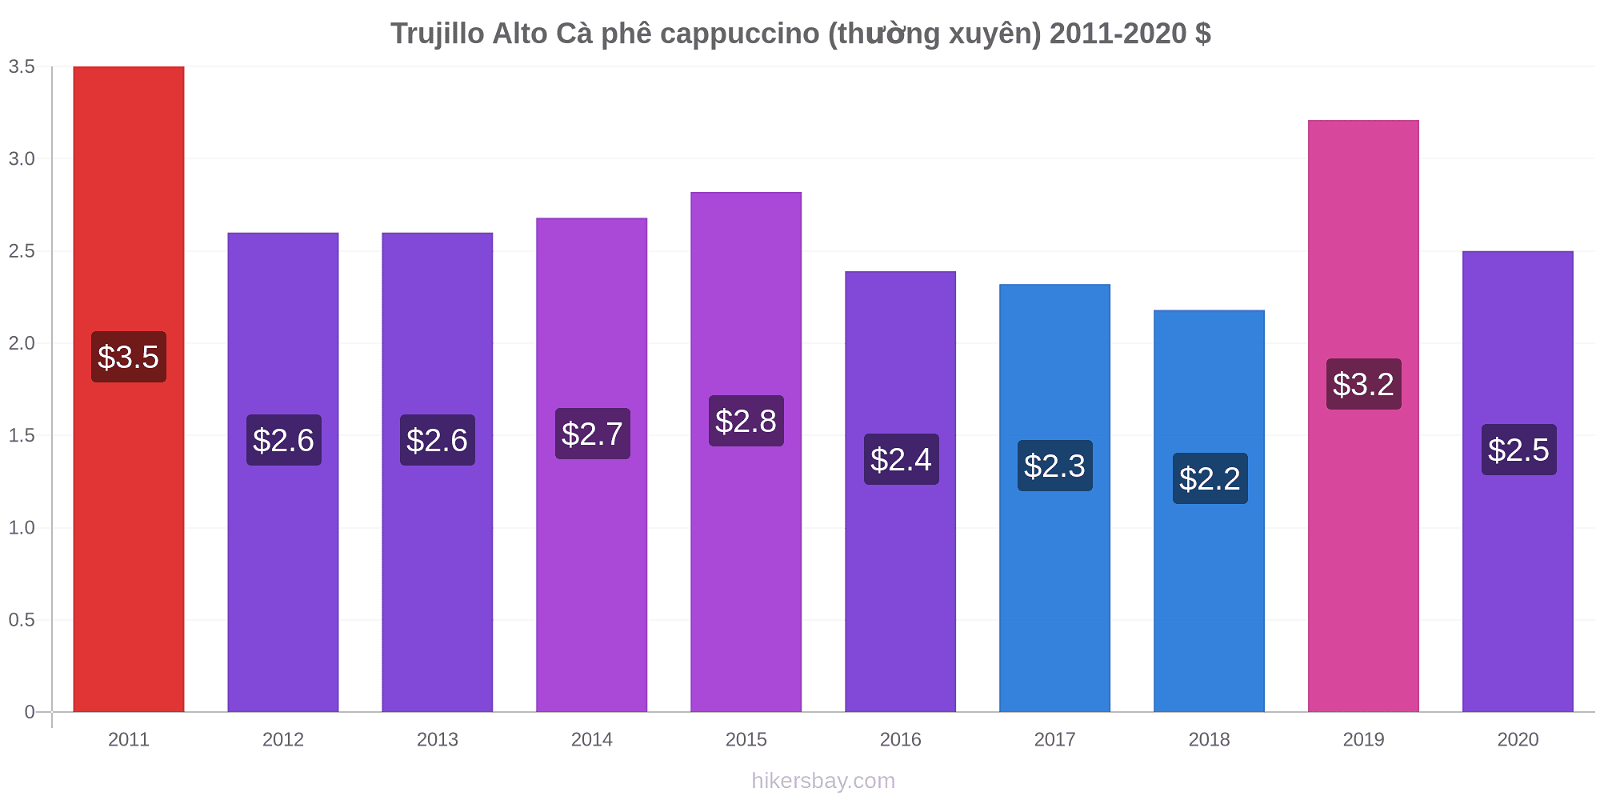 Trujillo Alto thay đổi giá Cà phê cappuccino (thường xuyên) hikersbay.com